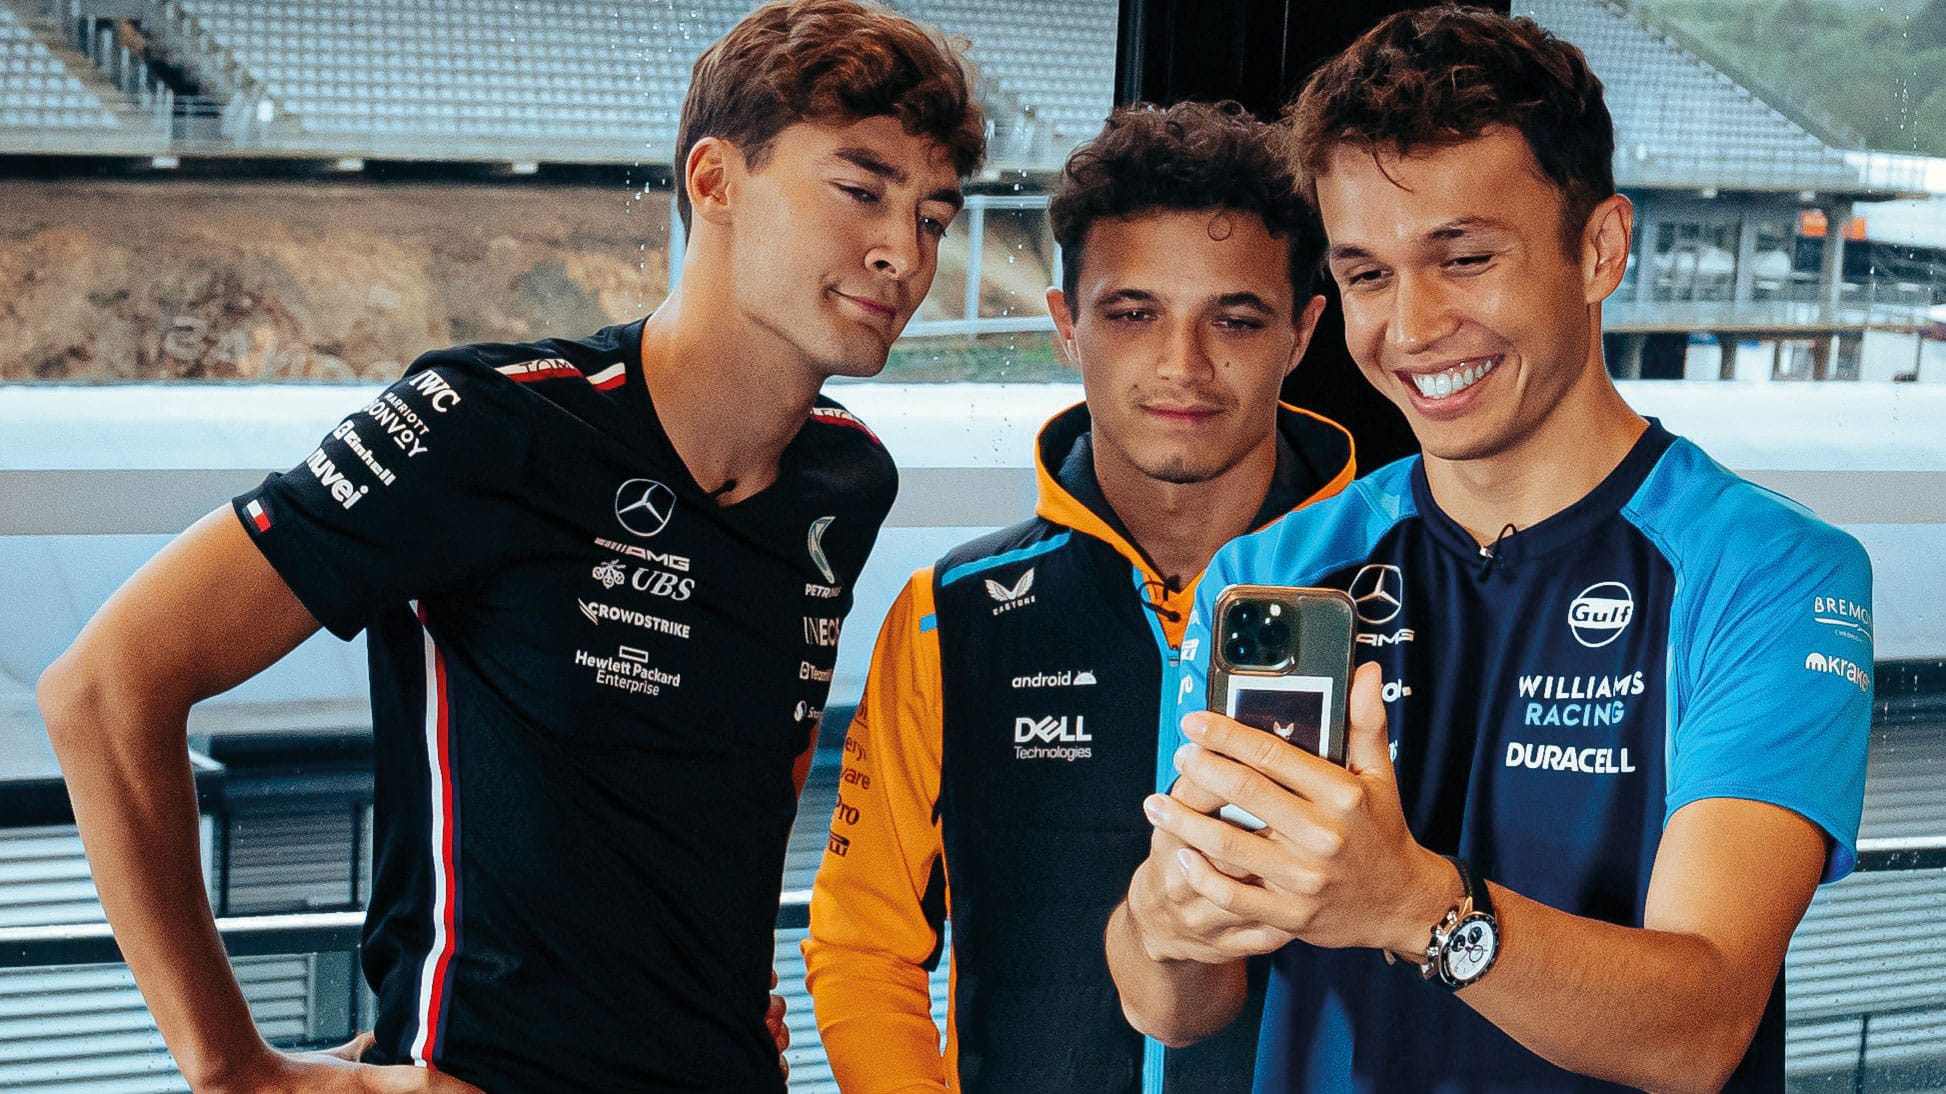 ¿Amigos – rivales – futuros campeones?  Russell, Norris y Albon en ascenso en la F1